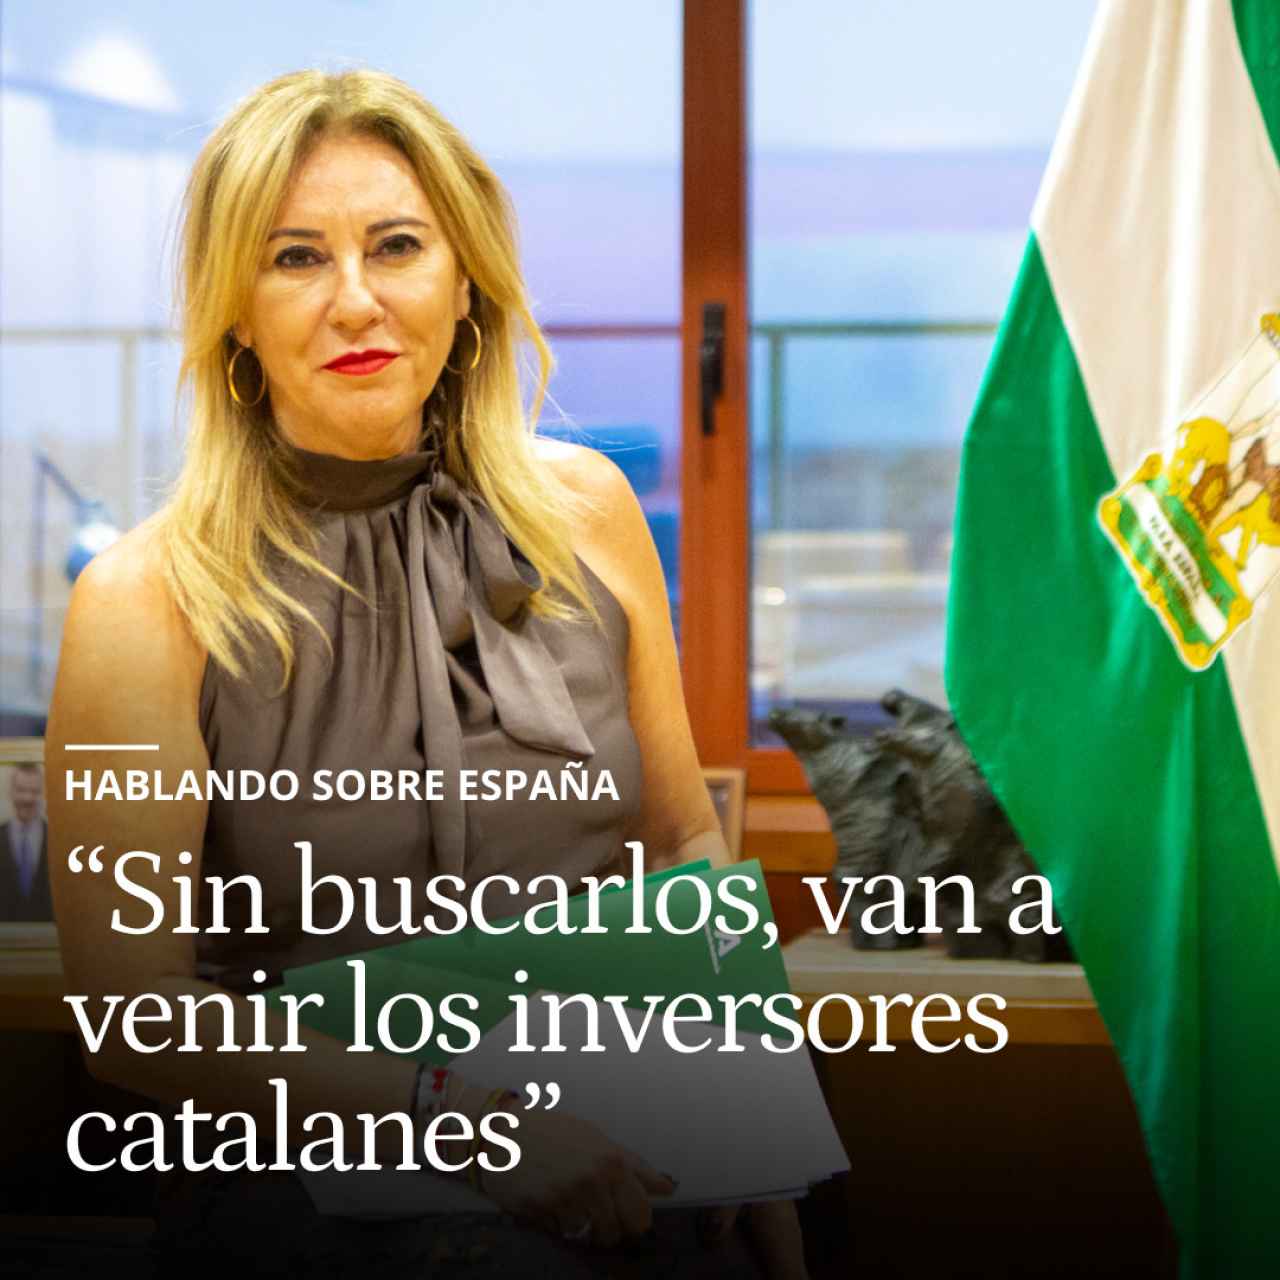 Carolina España, consejera de la "revolución fiscal": "Sin buscarlos, van a venir los inversores catalanes"